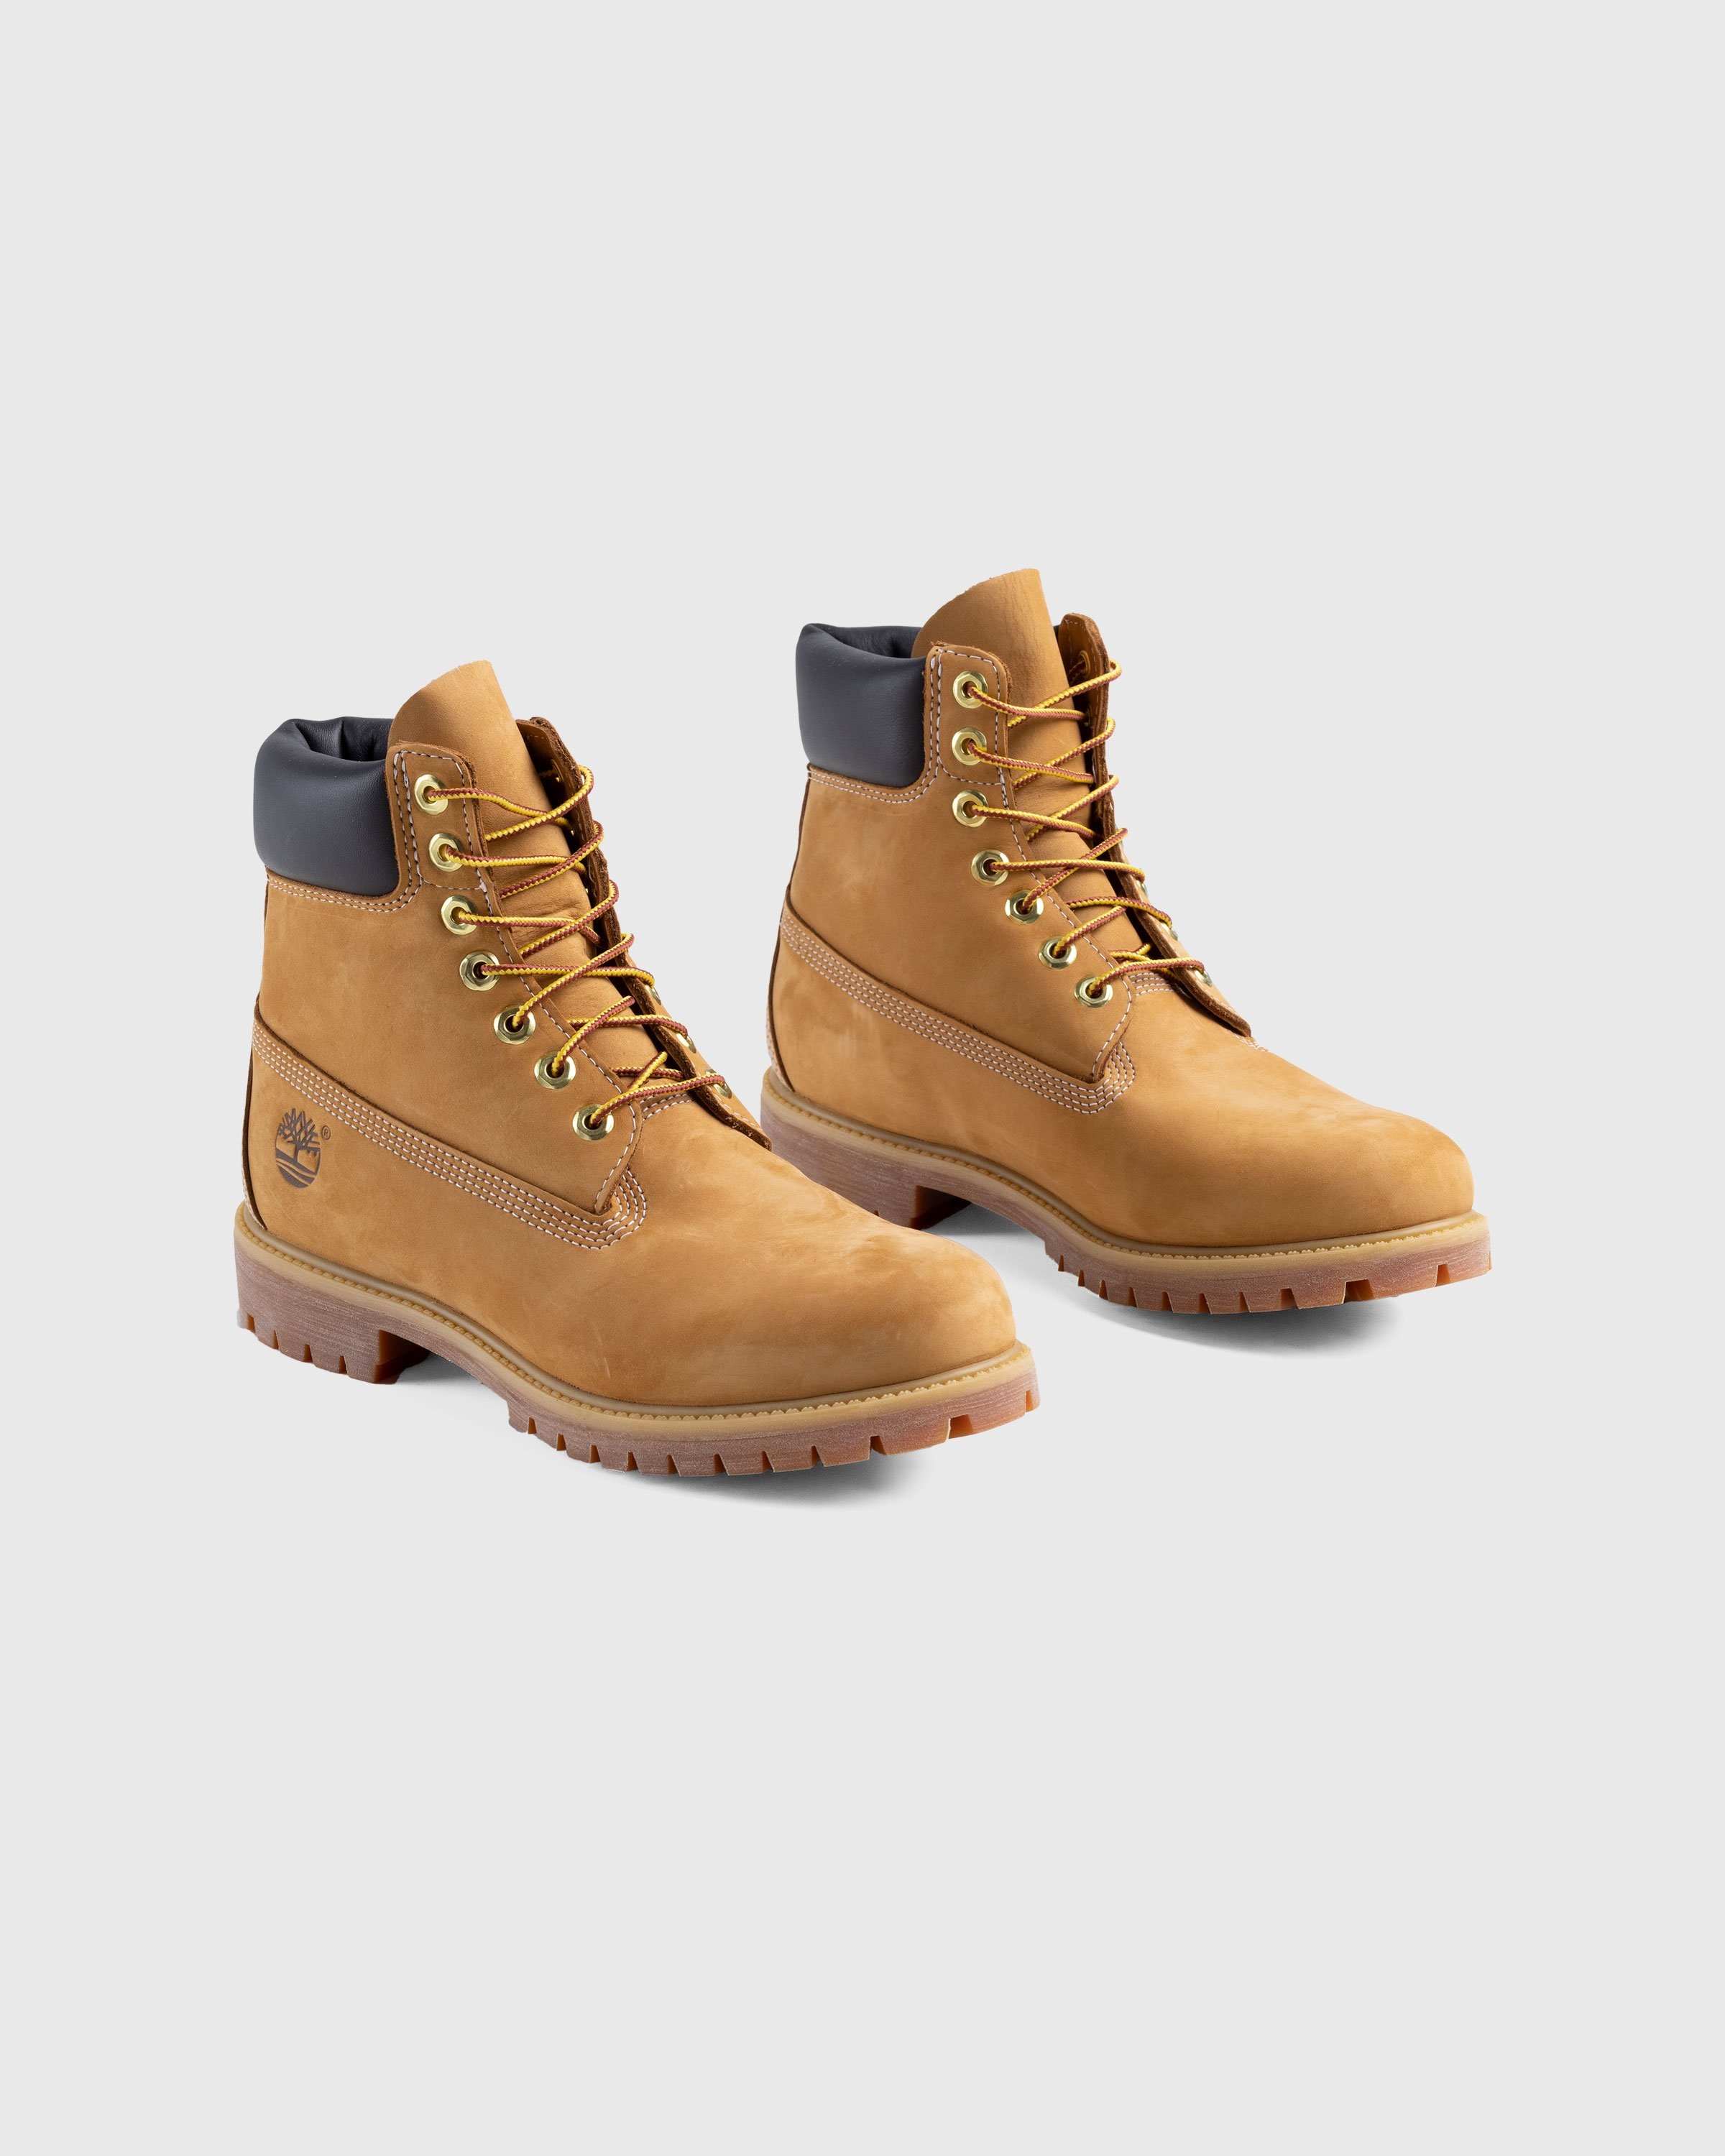 Timberland – 6 Inch Premium Boot Yellow - Boots - Yellow - Image 3